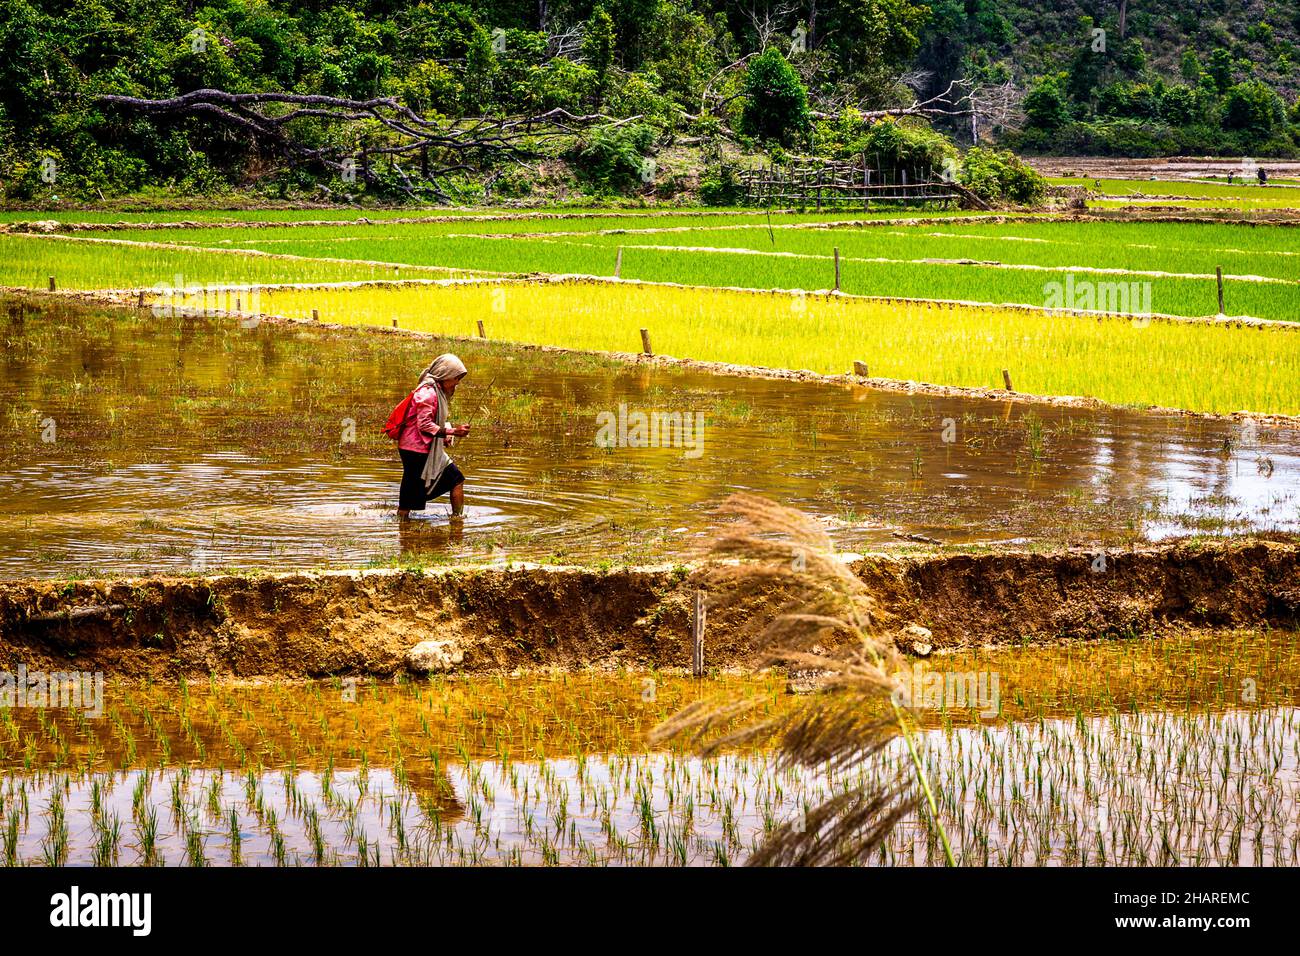 Une femme portant un sommet rouge marche dans un champ de riz inondé plantant du riz. Banque D'Images